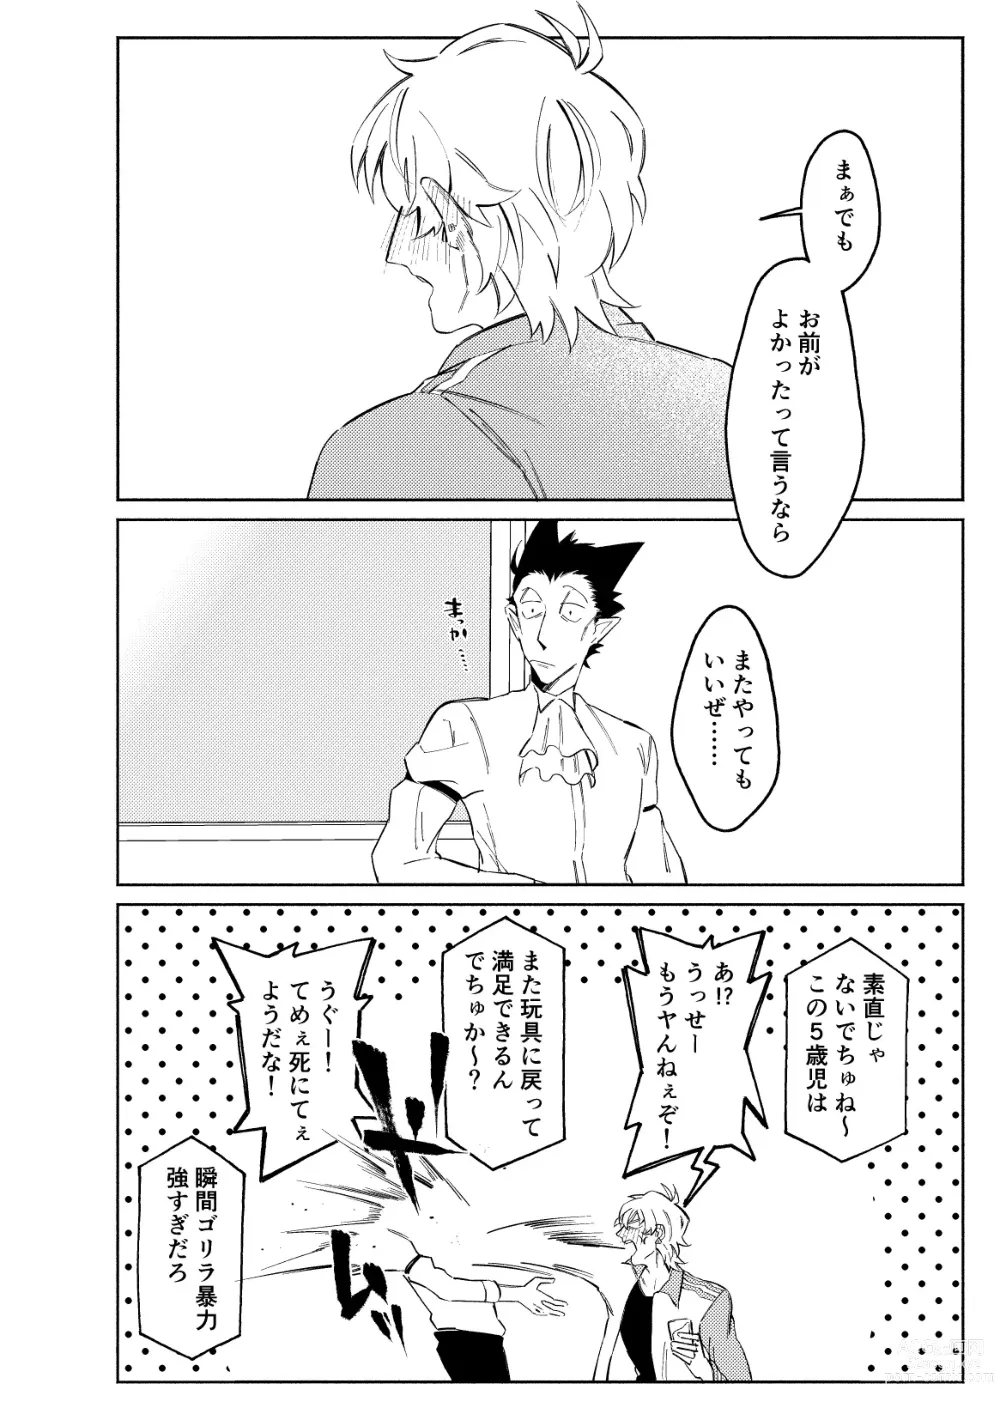 Page 32 of doujinshi 1stDRxxx